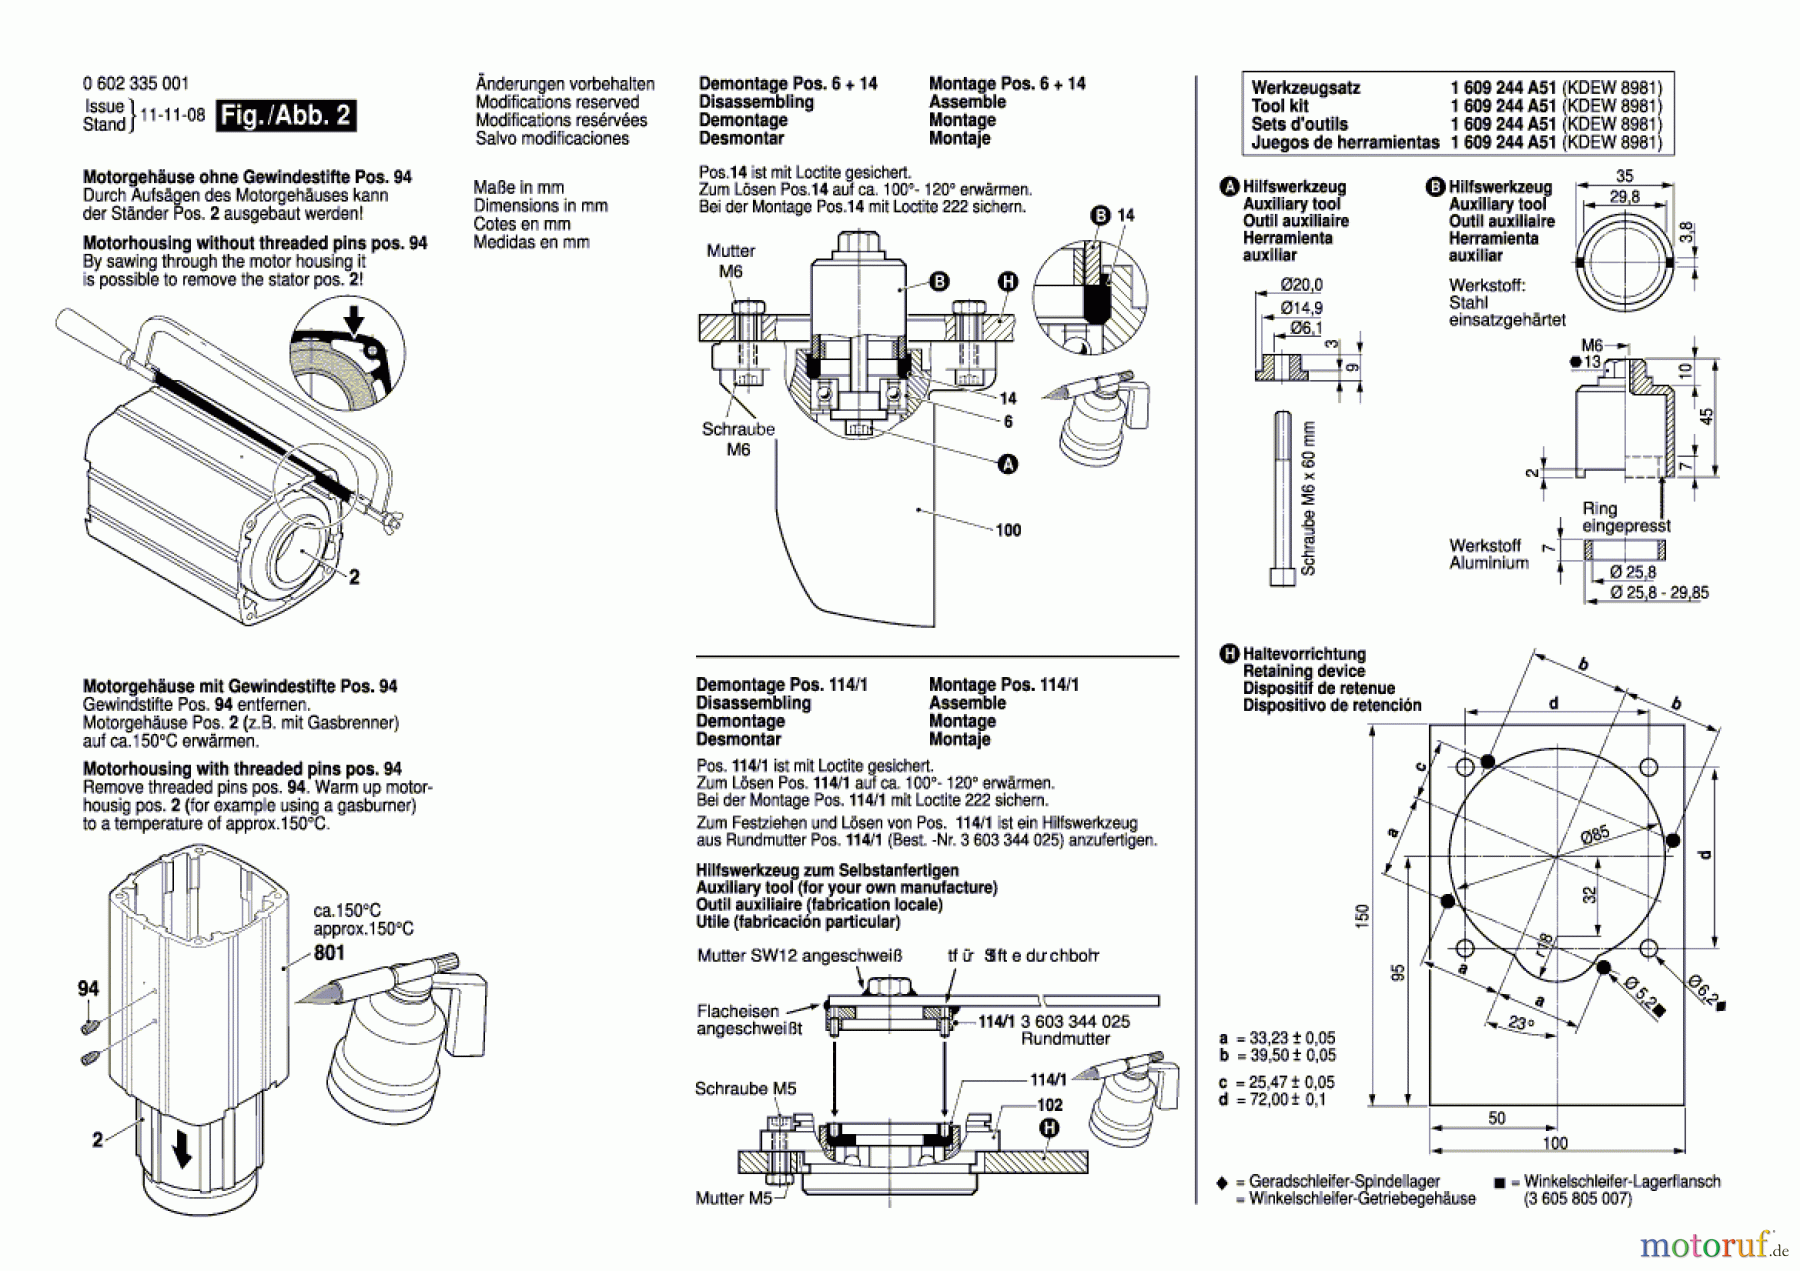  Bosch Werkzeug Hf-Winkelschleifer ---- Seite 2